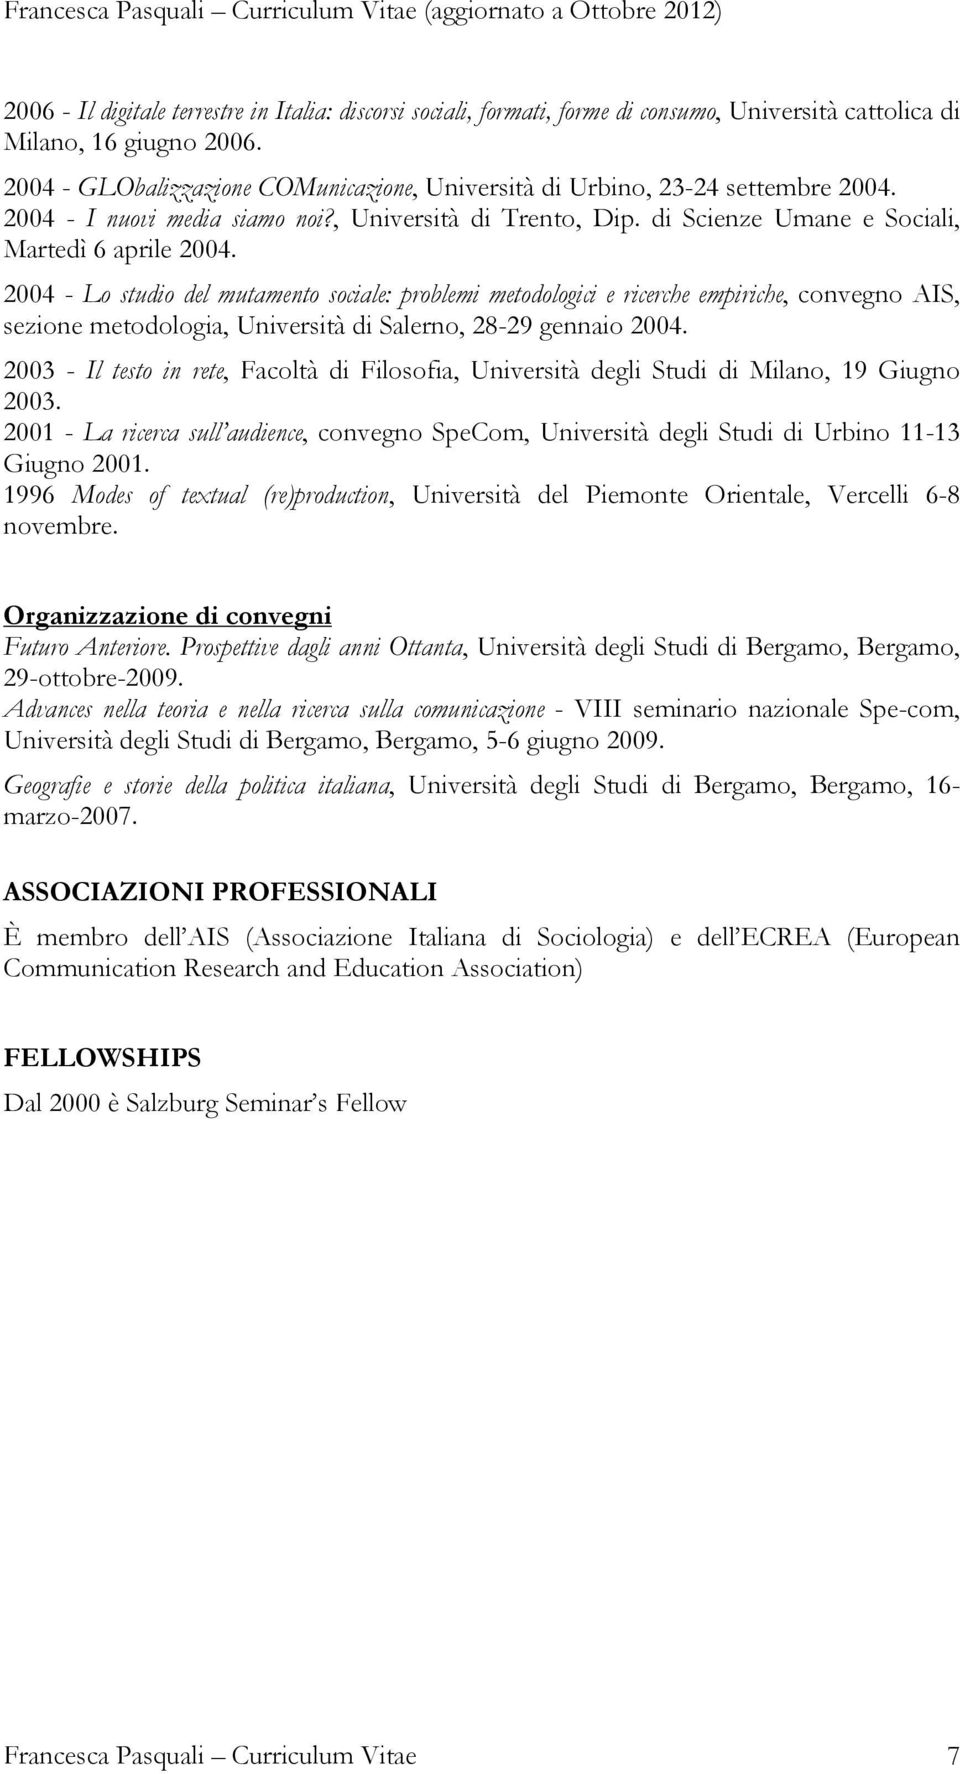 2004 - Lo studio del mutamento sociale: problemi metodologici e ricerche empiriche, convegno AIS, sezione metodologia, Università di Salerno, 28-29 gennaio 2004.